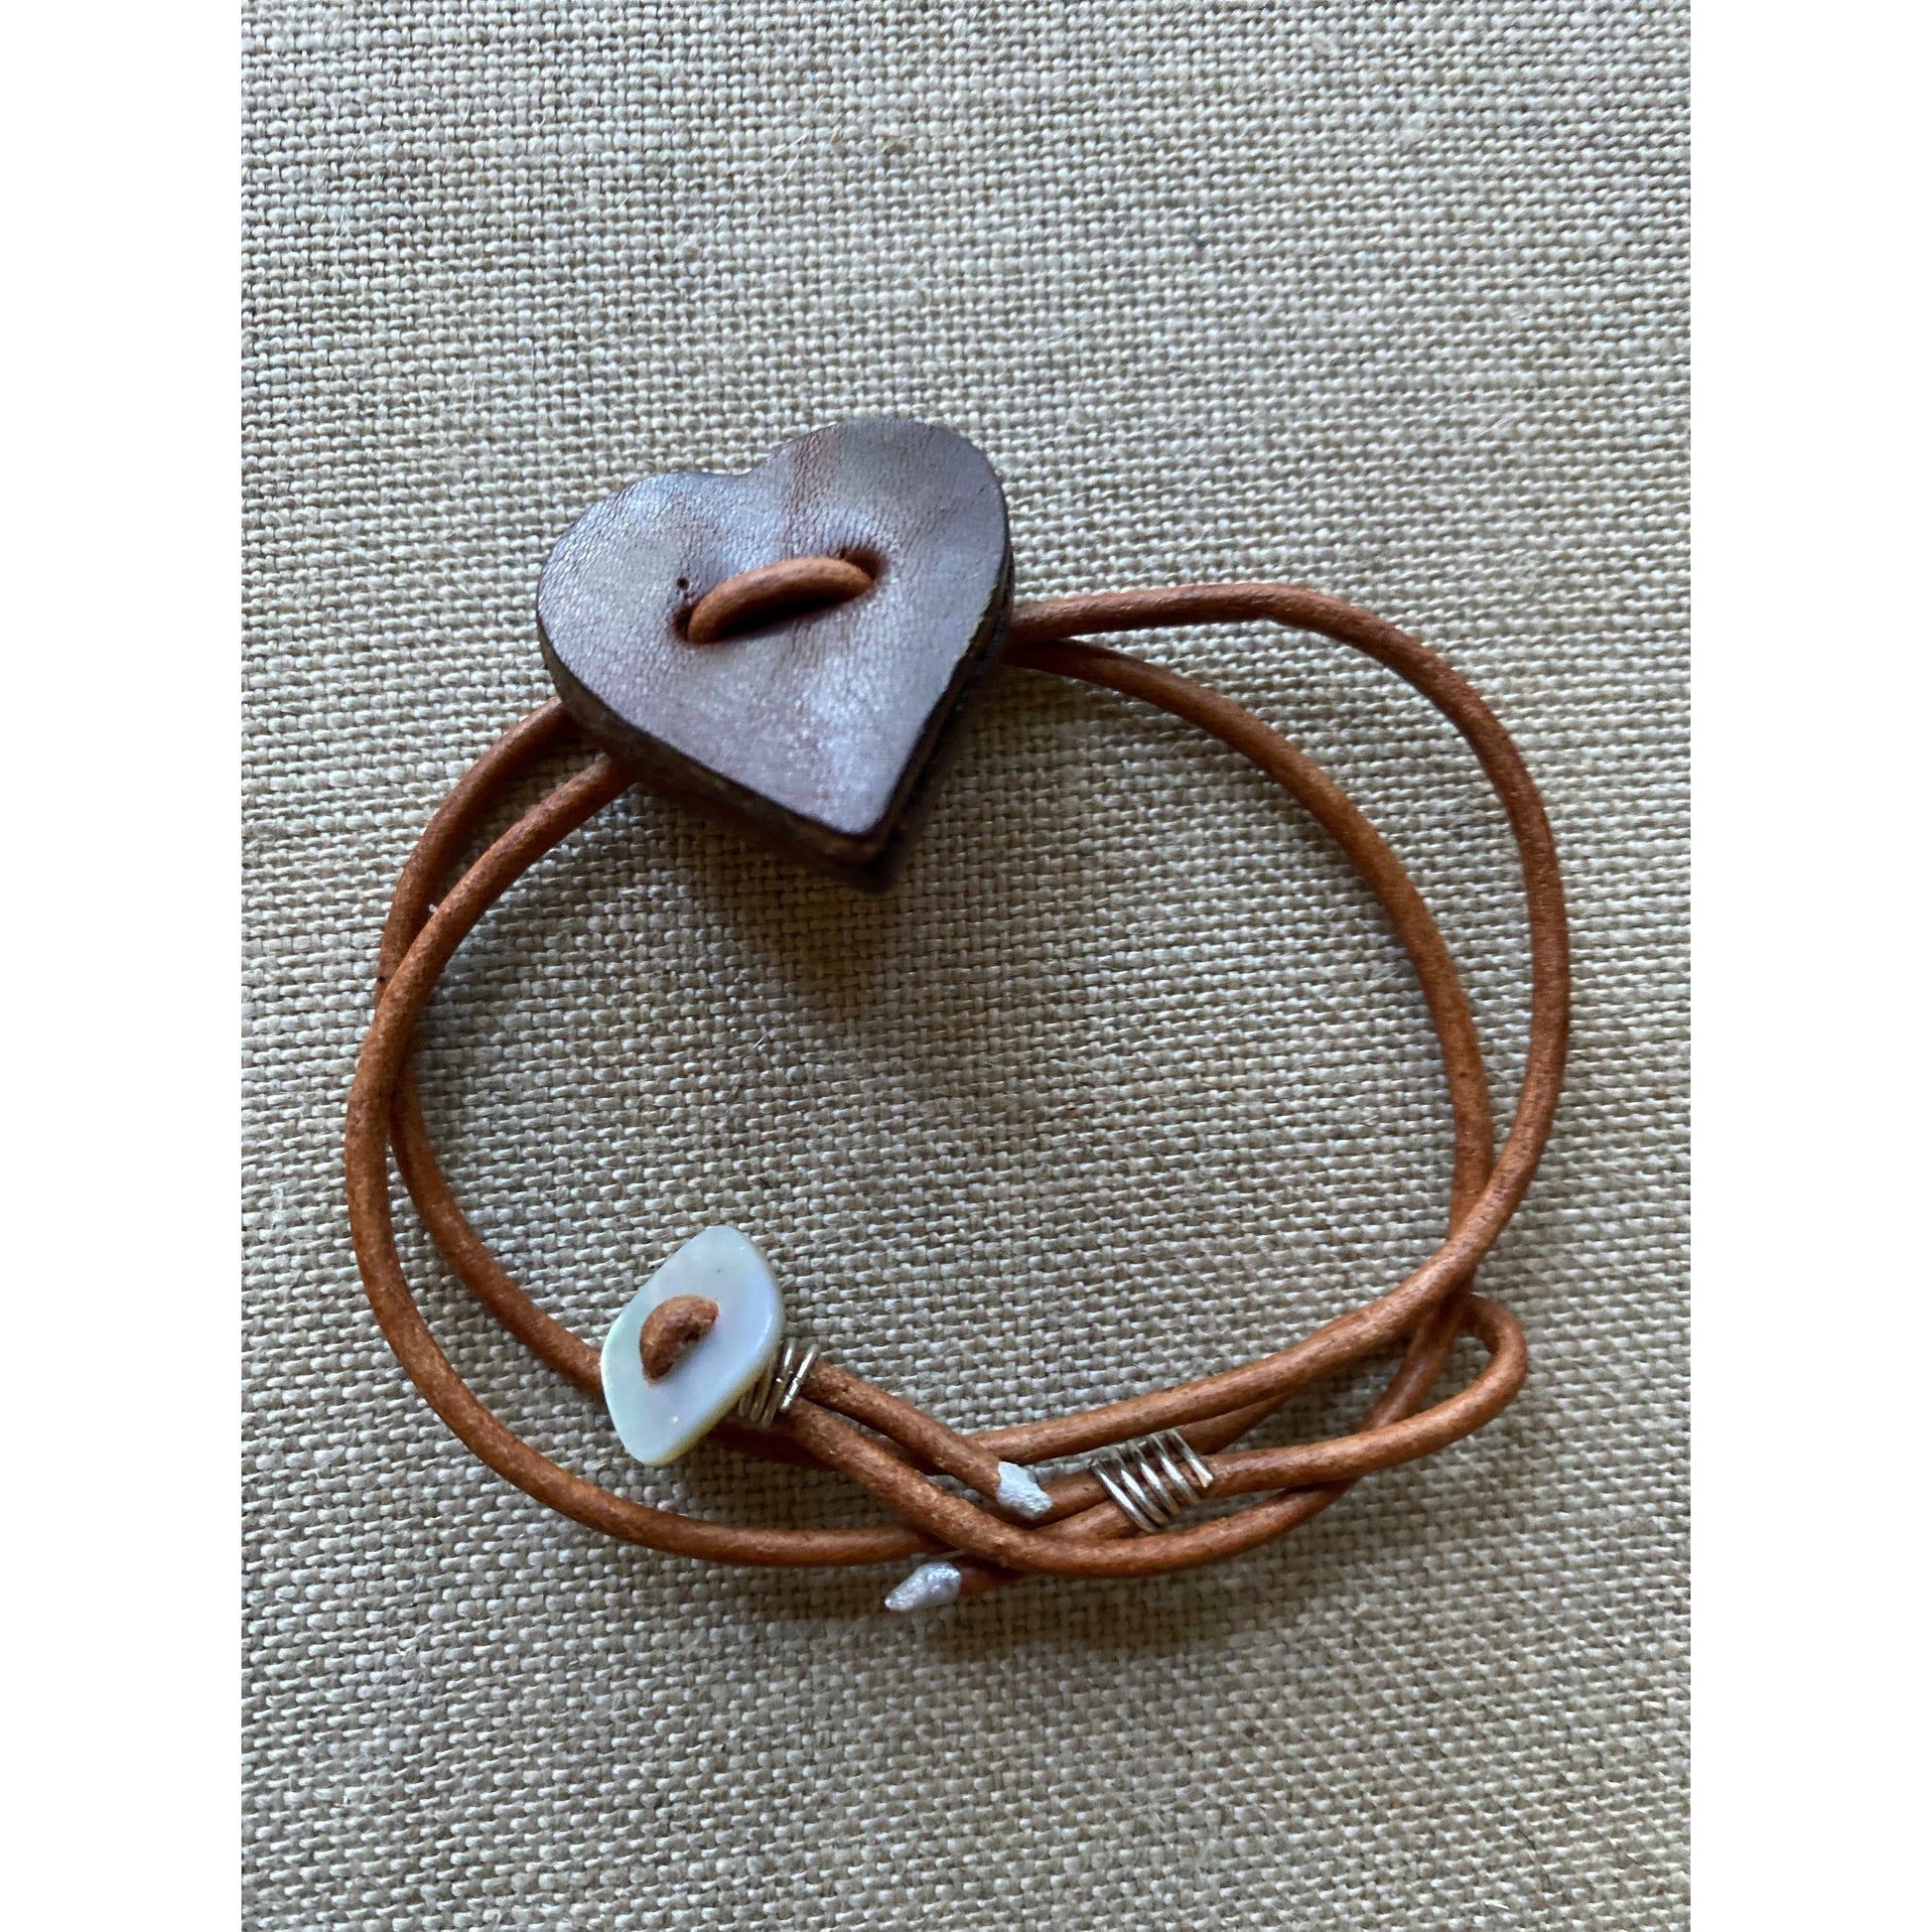 Leather Heart Bracelet California, Classic, Coastal, custom, gem stones, jewelry, Montecito, unique, unisex Chaio Leather Goods -